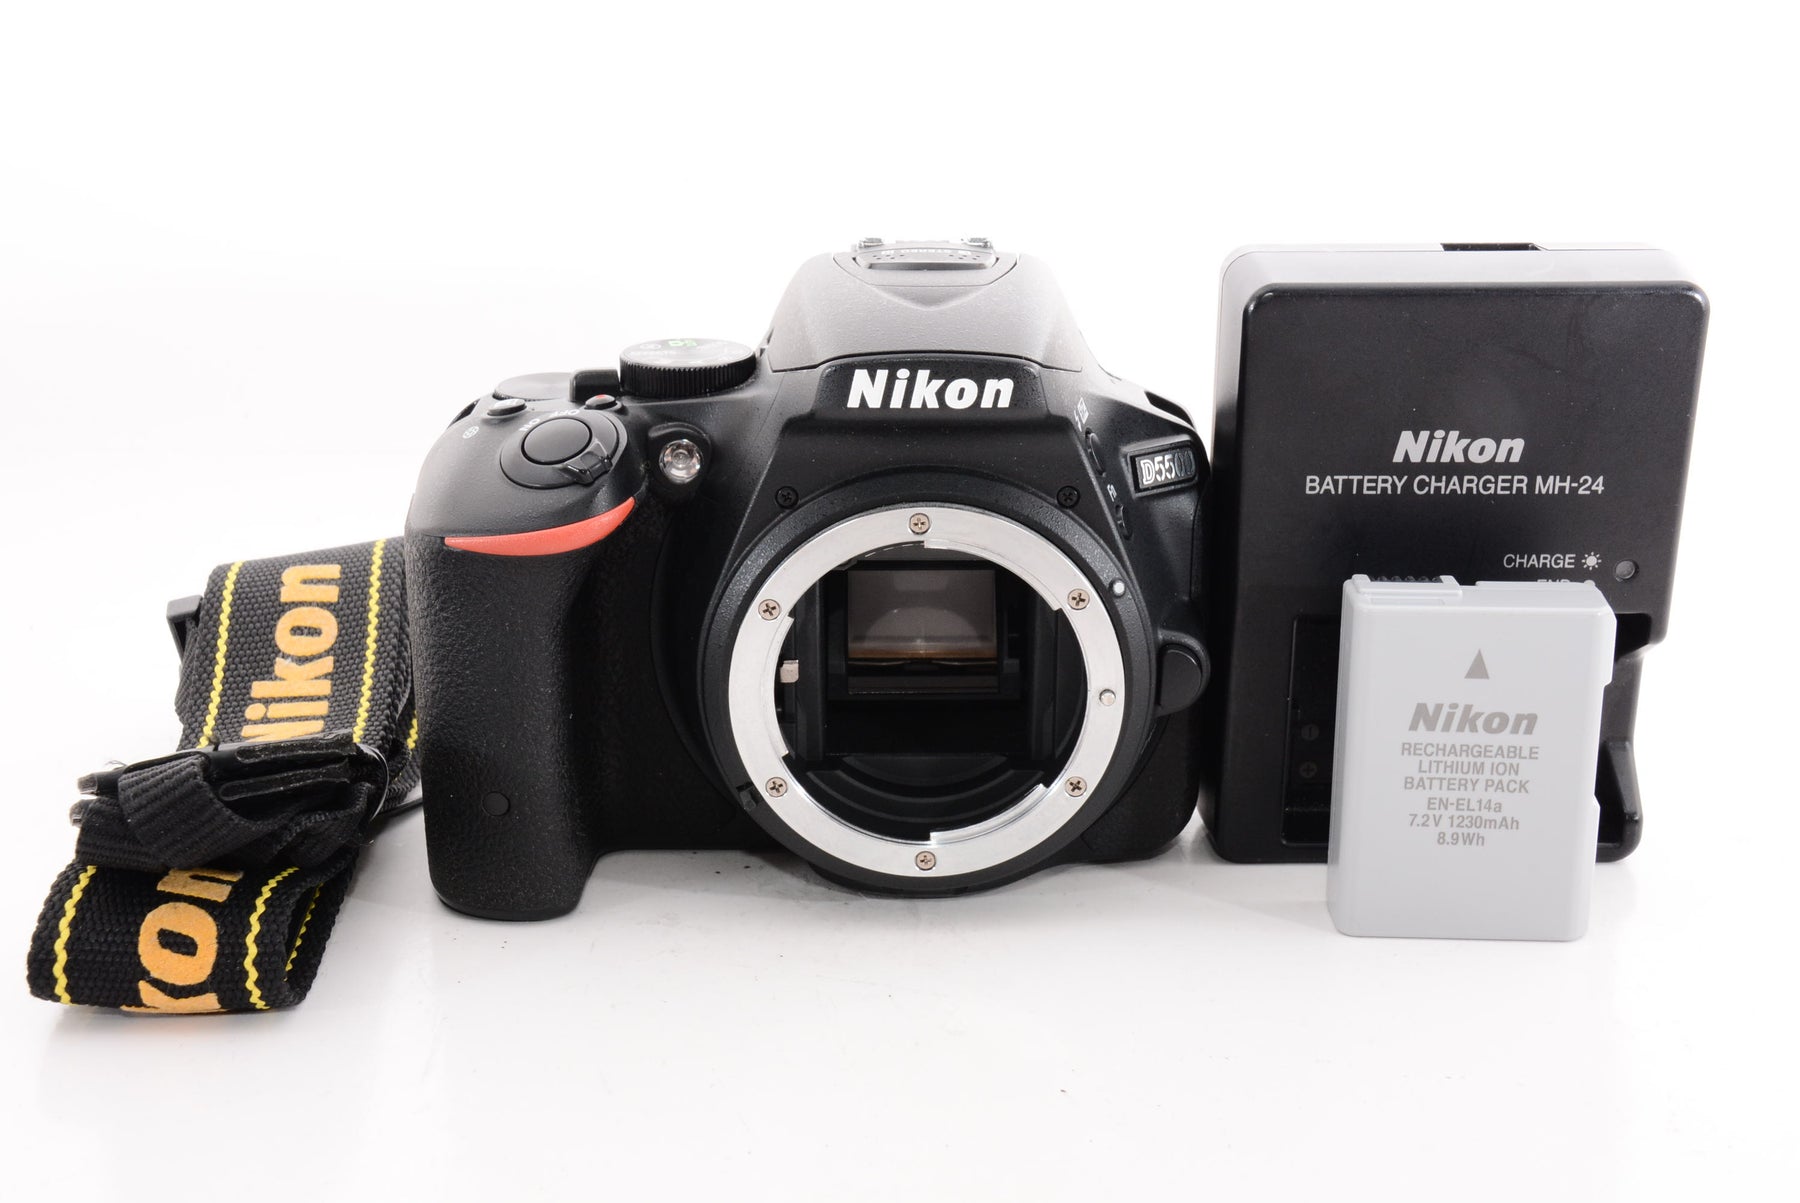 【外観特上級】Nikon デジタル一眼レフカメラ D5500 ボディー ブラック 2416万画素 3.2型液晶 タッチパネル D5500BK